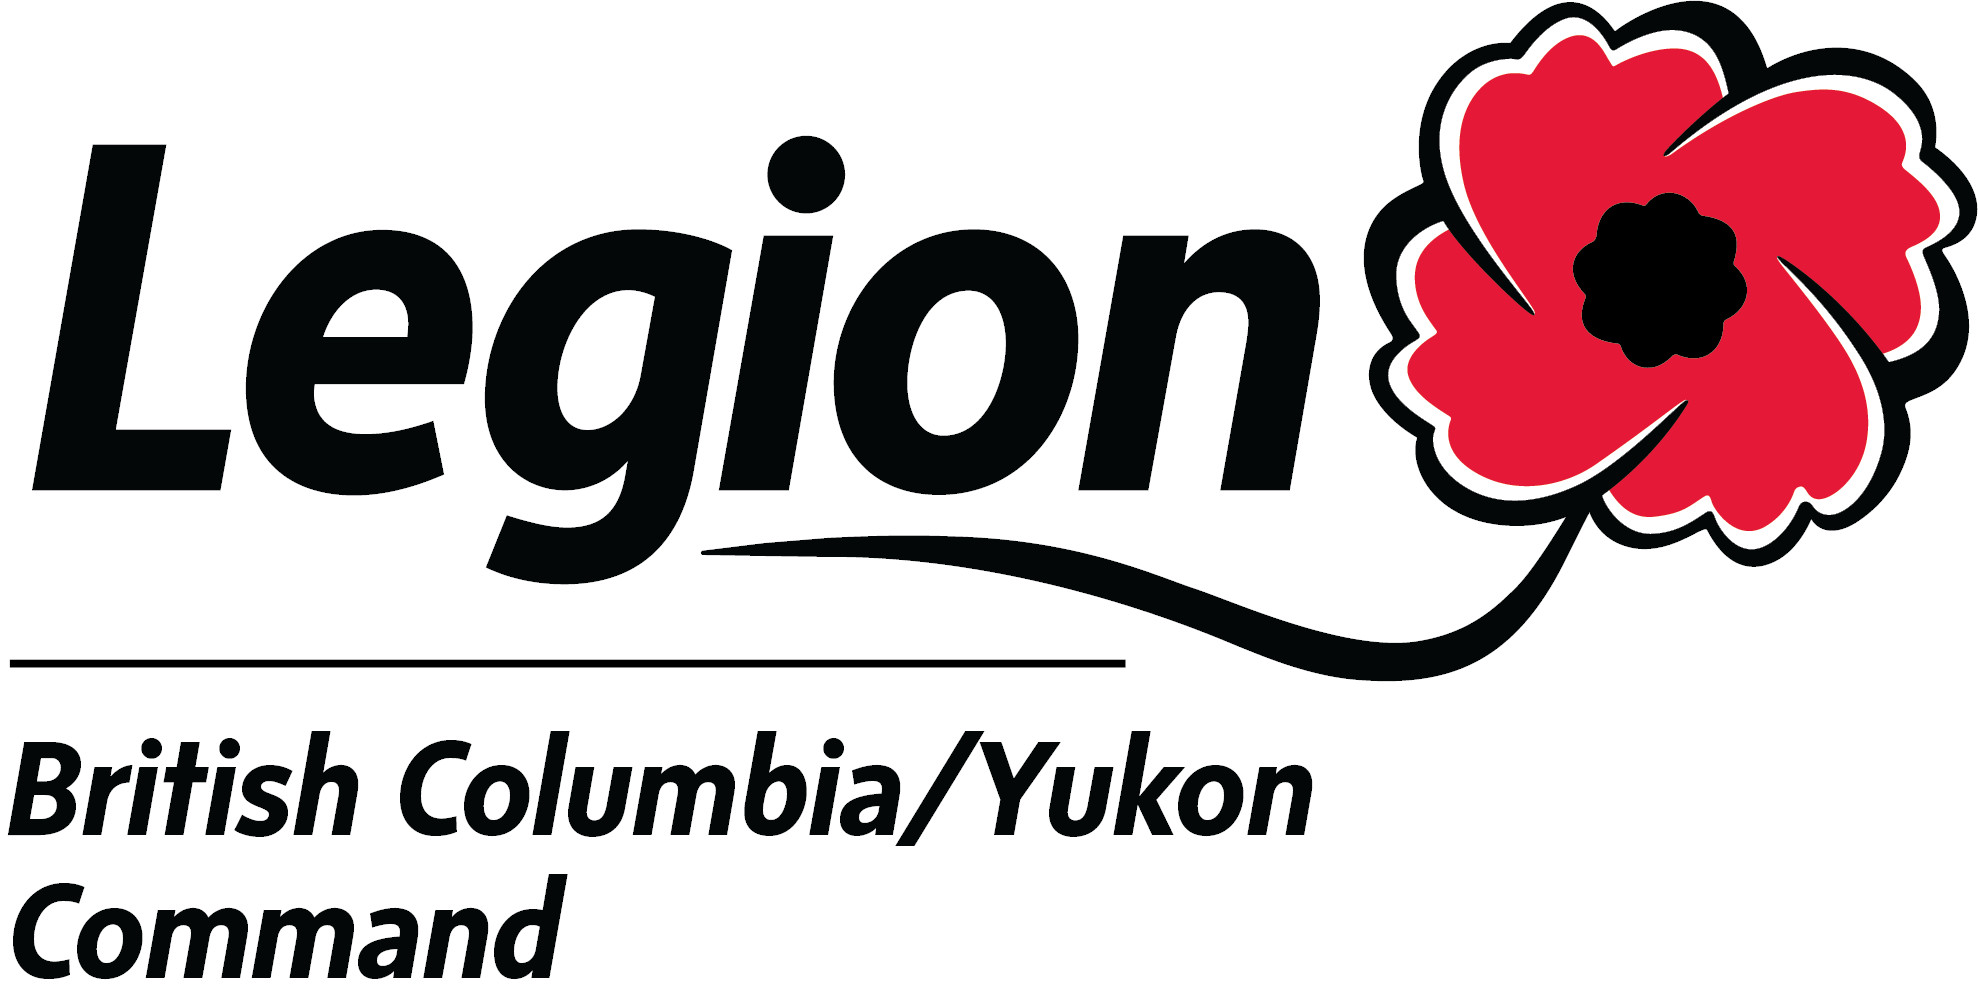 Direction provinciale de la Colombie-Britannique/Yukon de La Légion royale canadienne